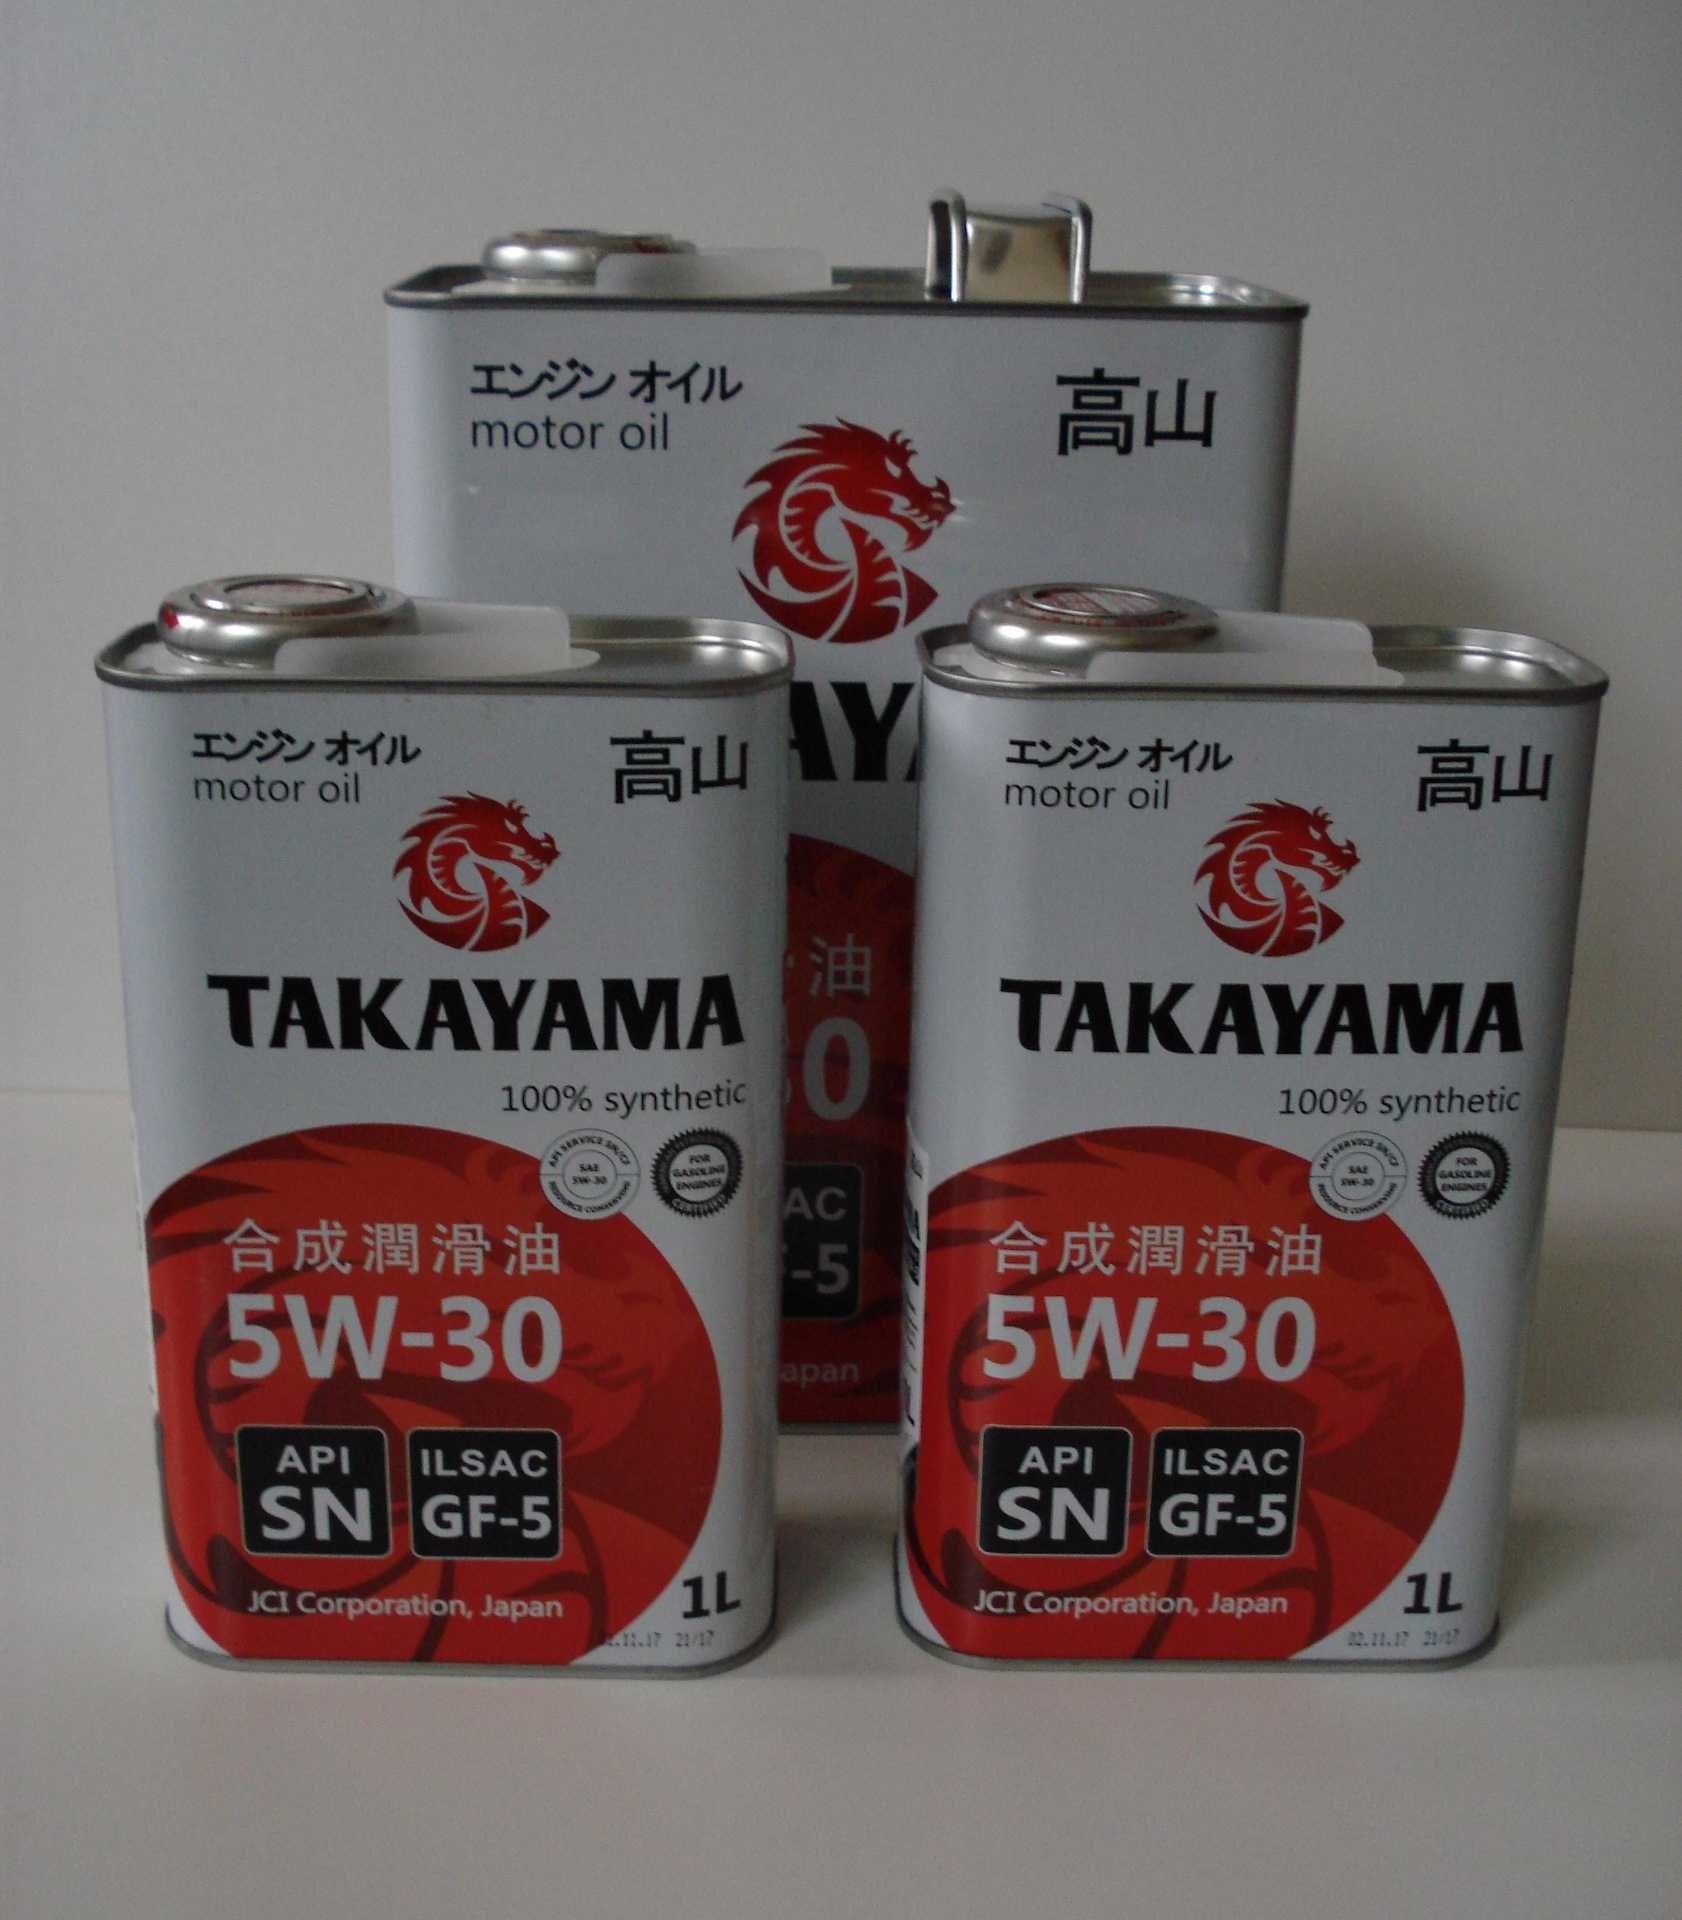 Масло такаяма 5w30 купить. Японское моторное масло Takayama 5w30. Масло моторное Такаяма 5-30. Takayama 5w30 драйв2. Такаяма 5w30 Тойота Лексус.